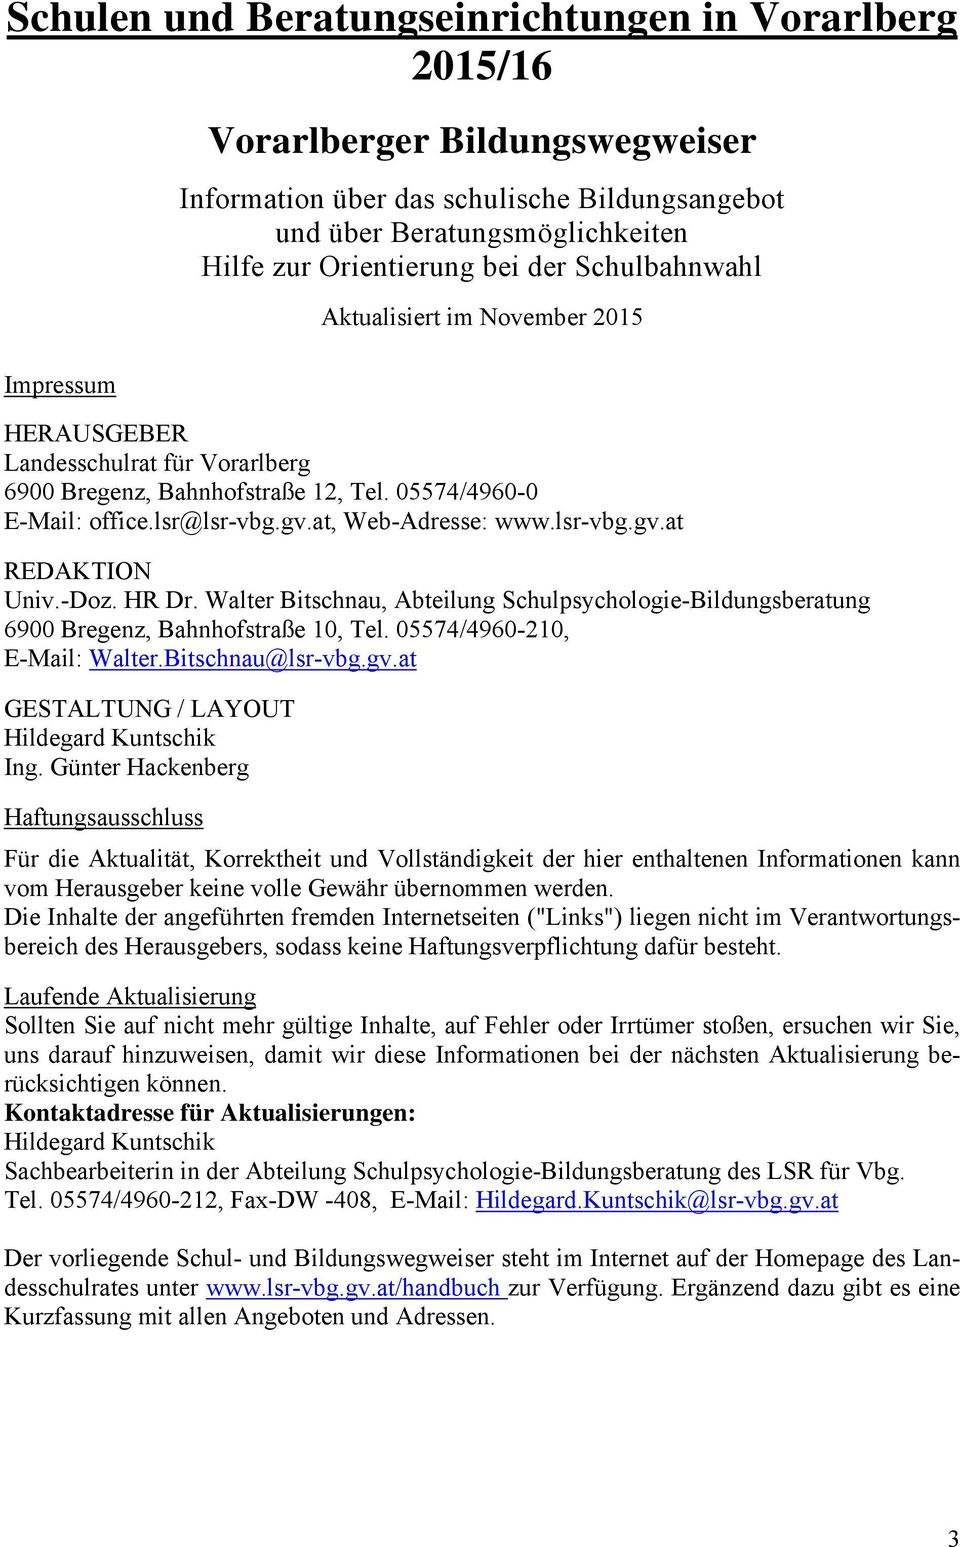 at, Web-Adresse: www.lsr-vbg.gv.at REDAKTION Univ.-Doz. HR Dr. Walter Bitschnau, Abteilung Schulpsychologie-Bildungsberatung 6900 Bregenz, Bahnhofstraße 10, Tel. 05574/4960-210, E-Mail: Walter.